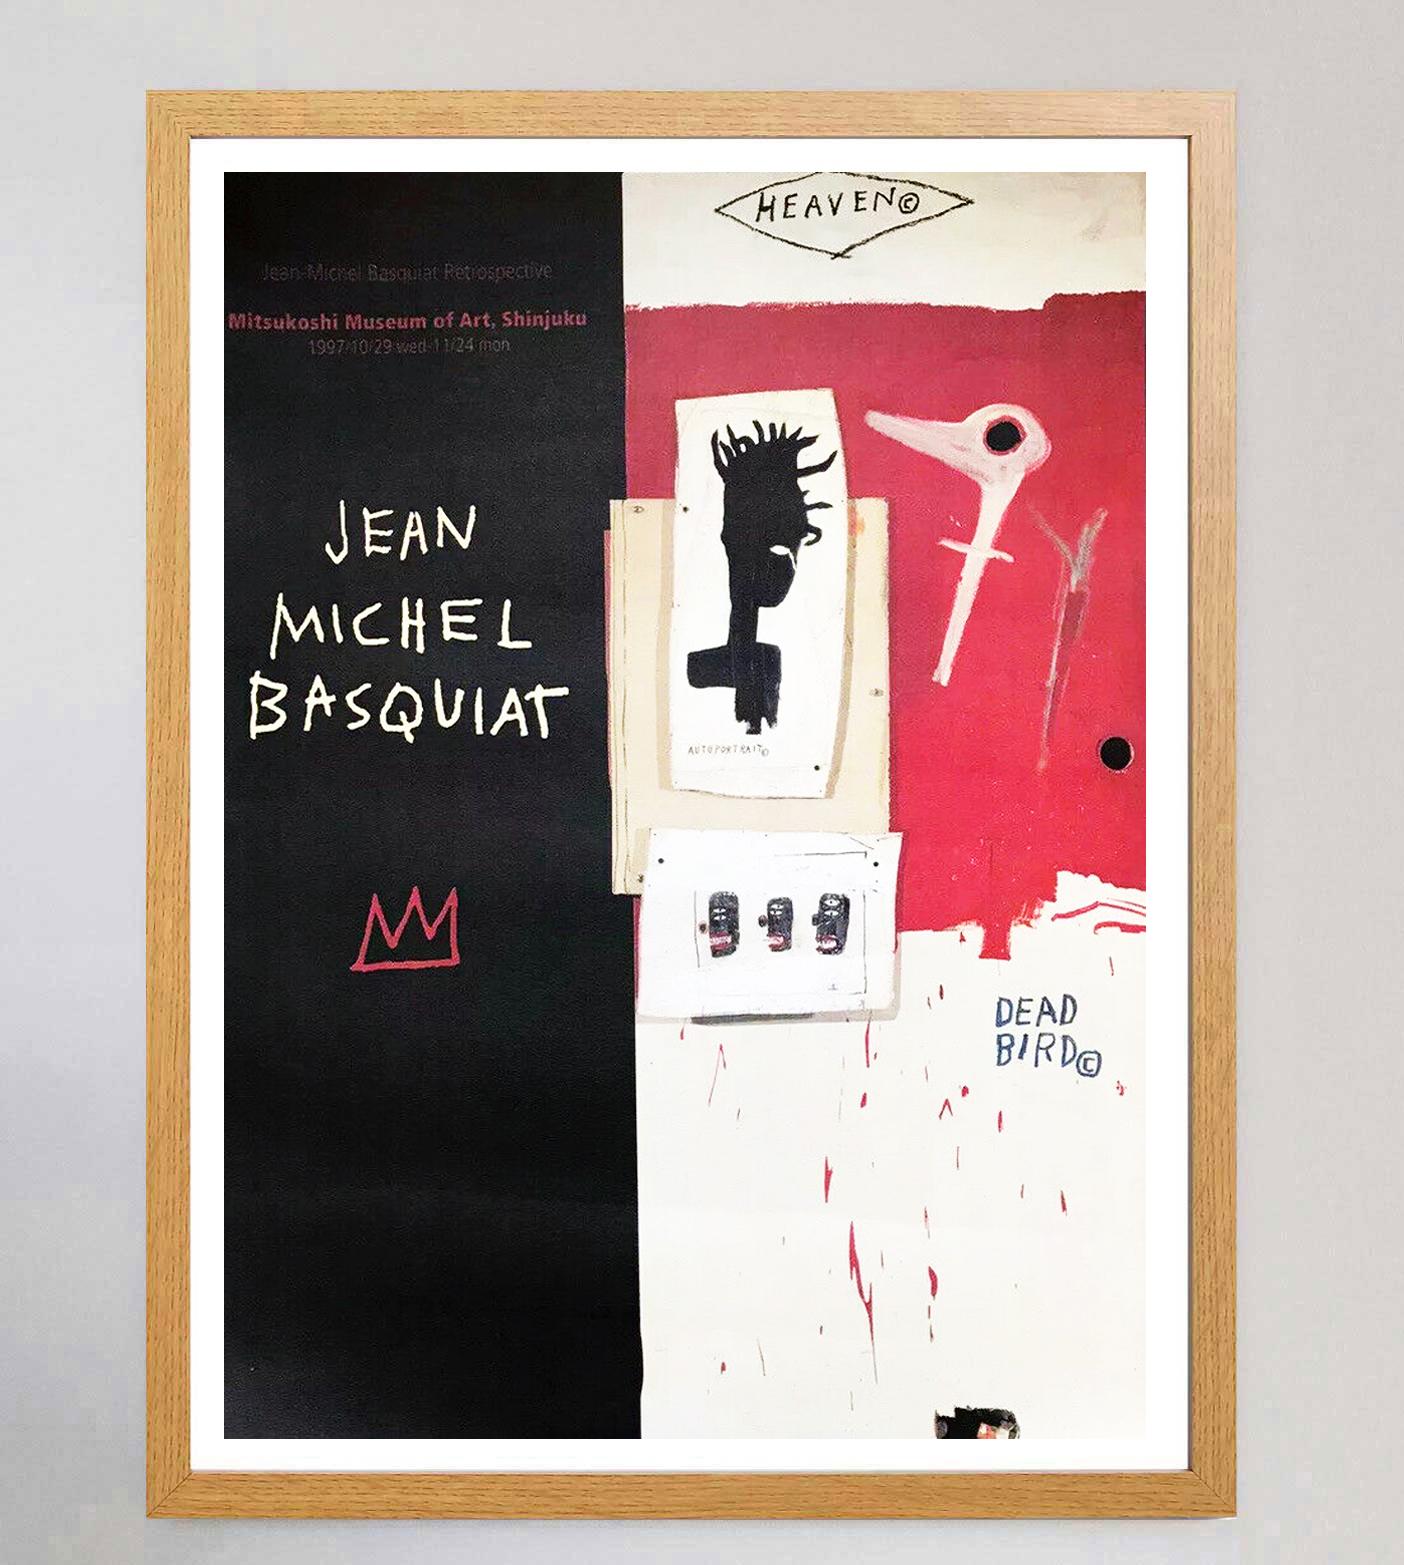 where was basquiat found dead